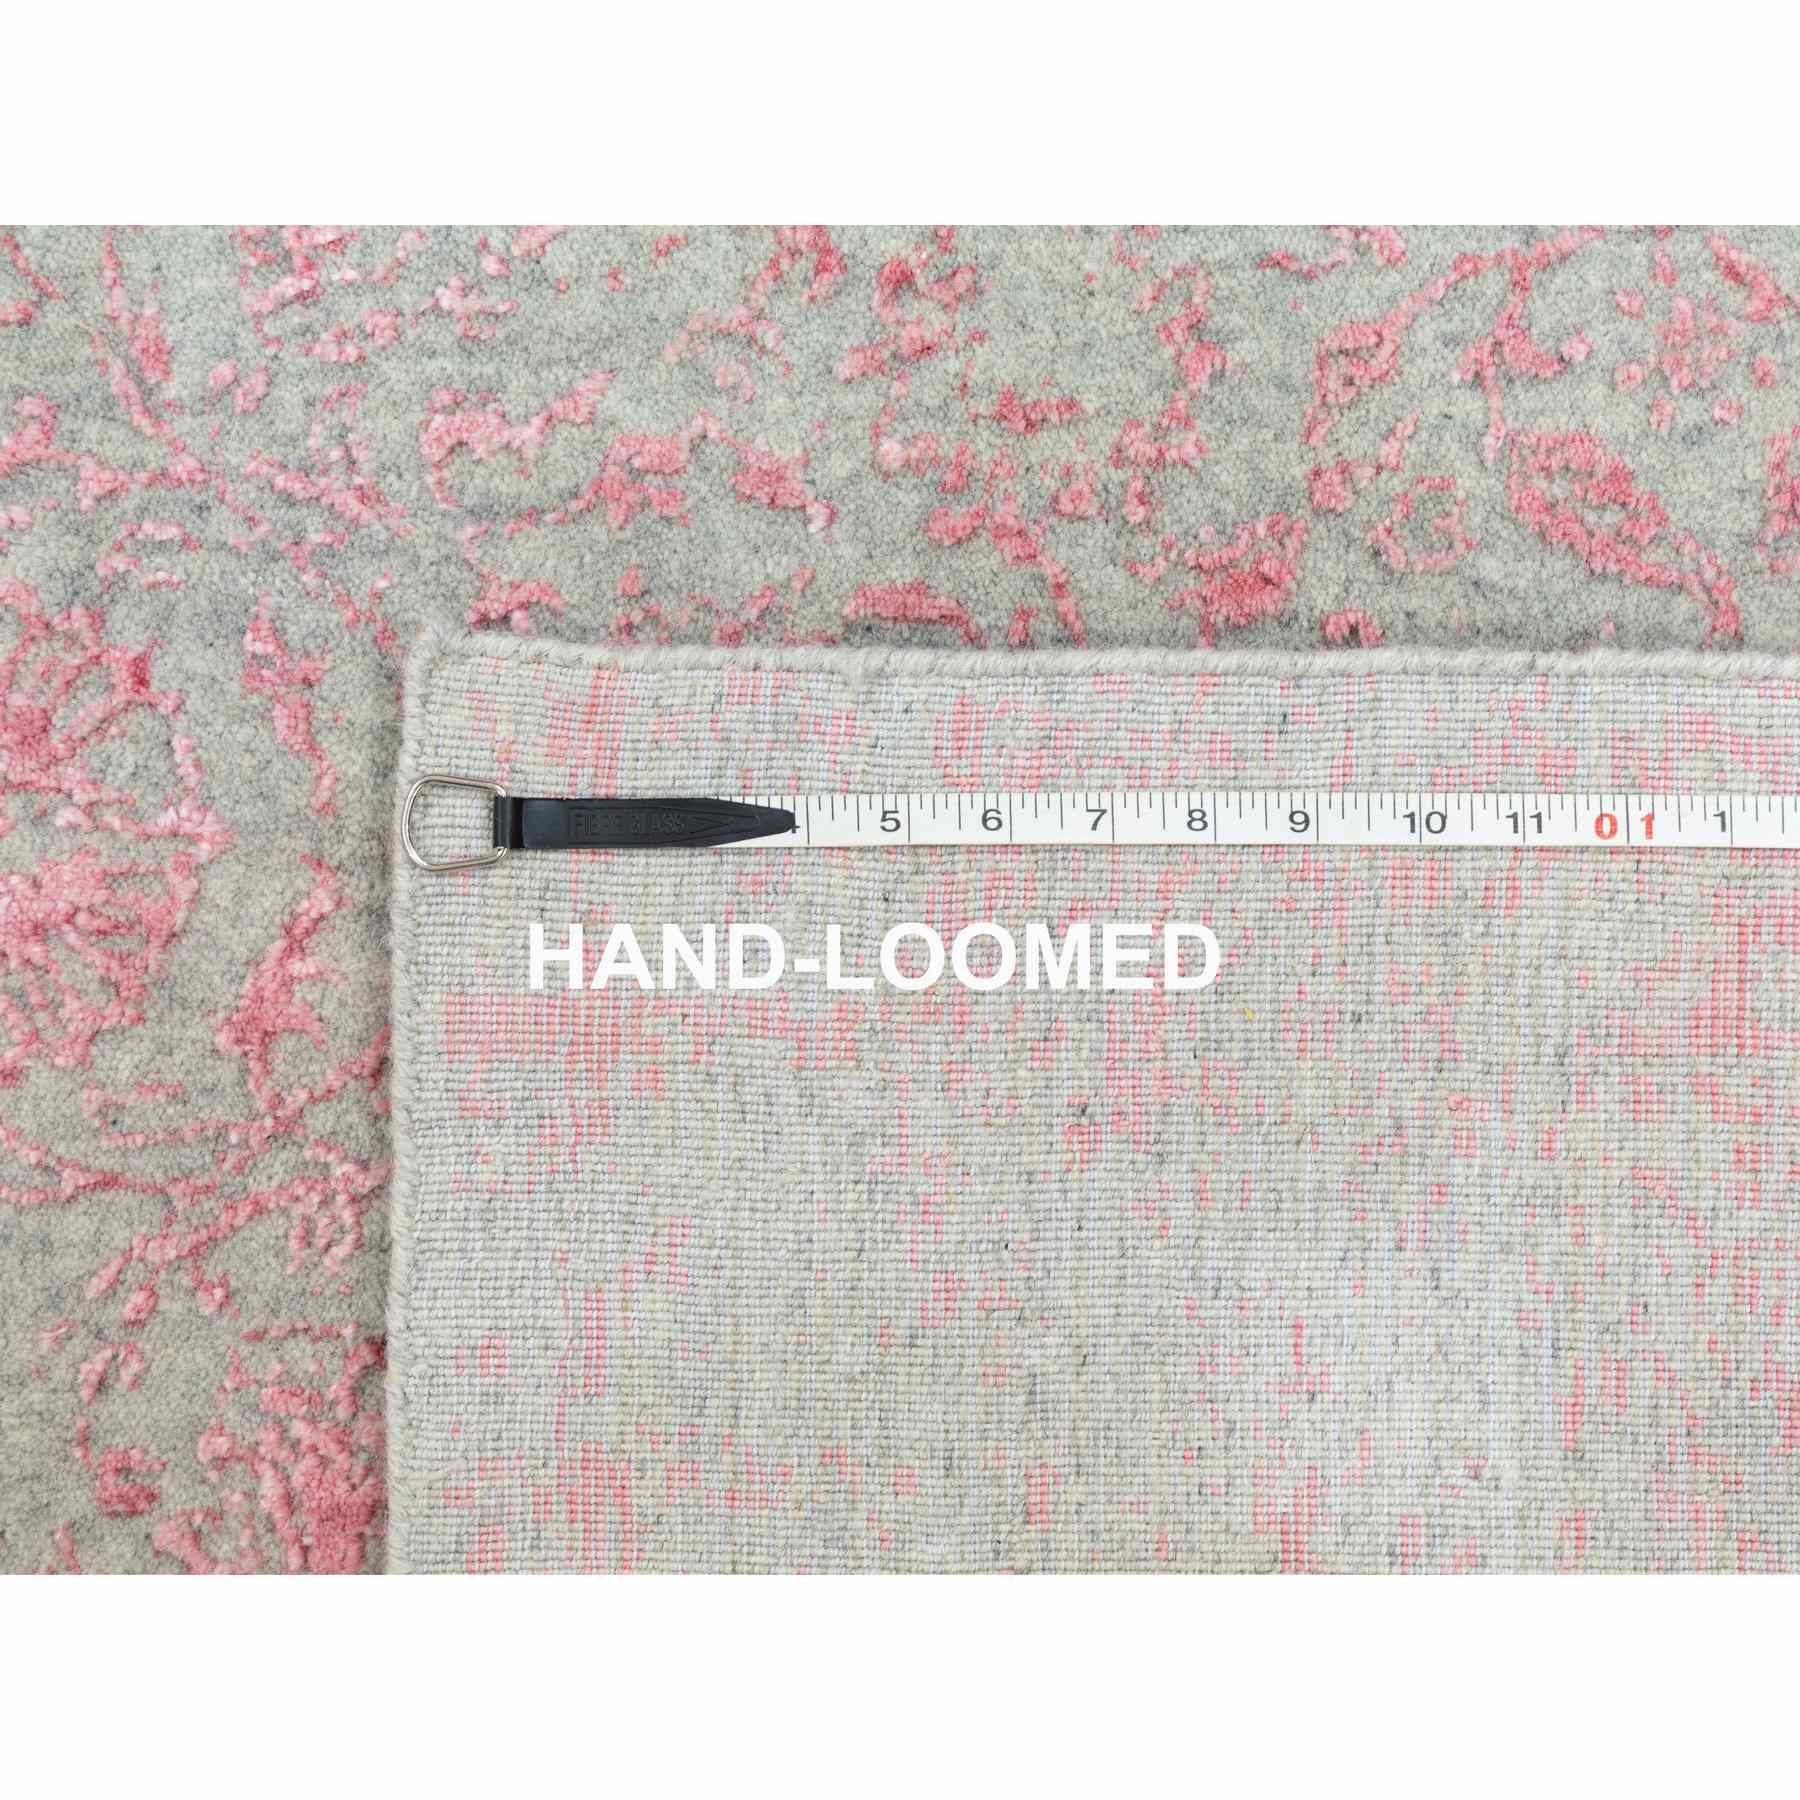 Hand-Loomed-Hand-Loomed-Rug-292900